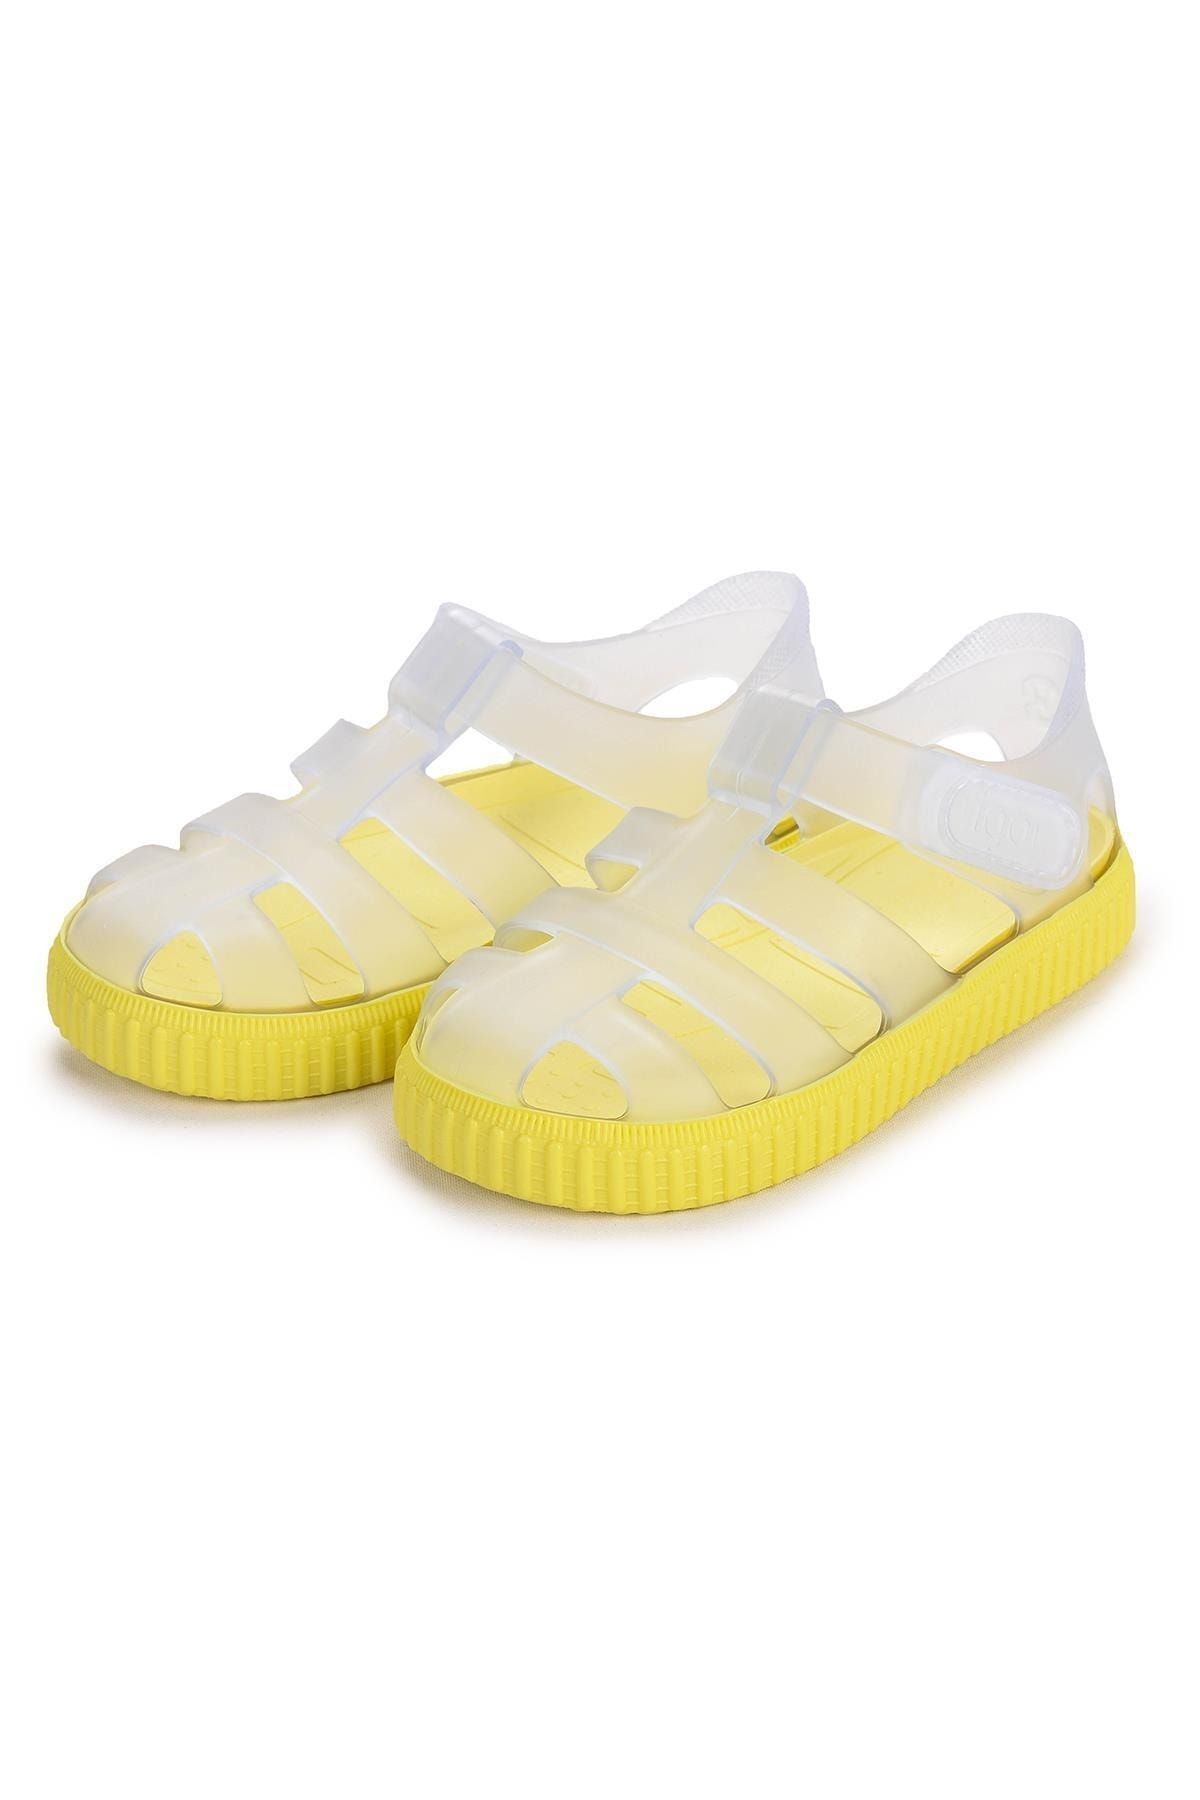 IGOR S10290 Nico Cristal Bebek Çocuk Sandalet Ayakkabı